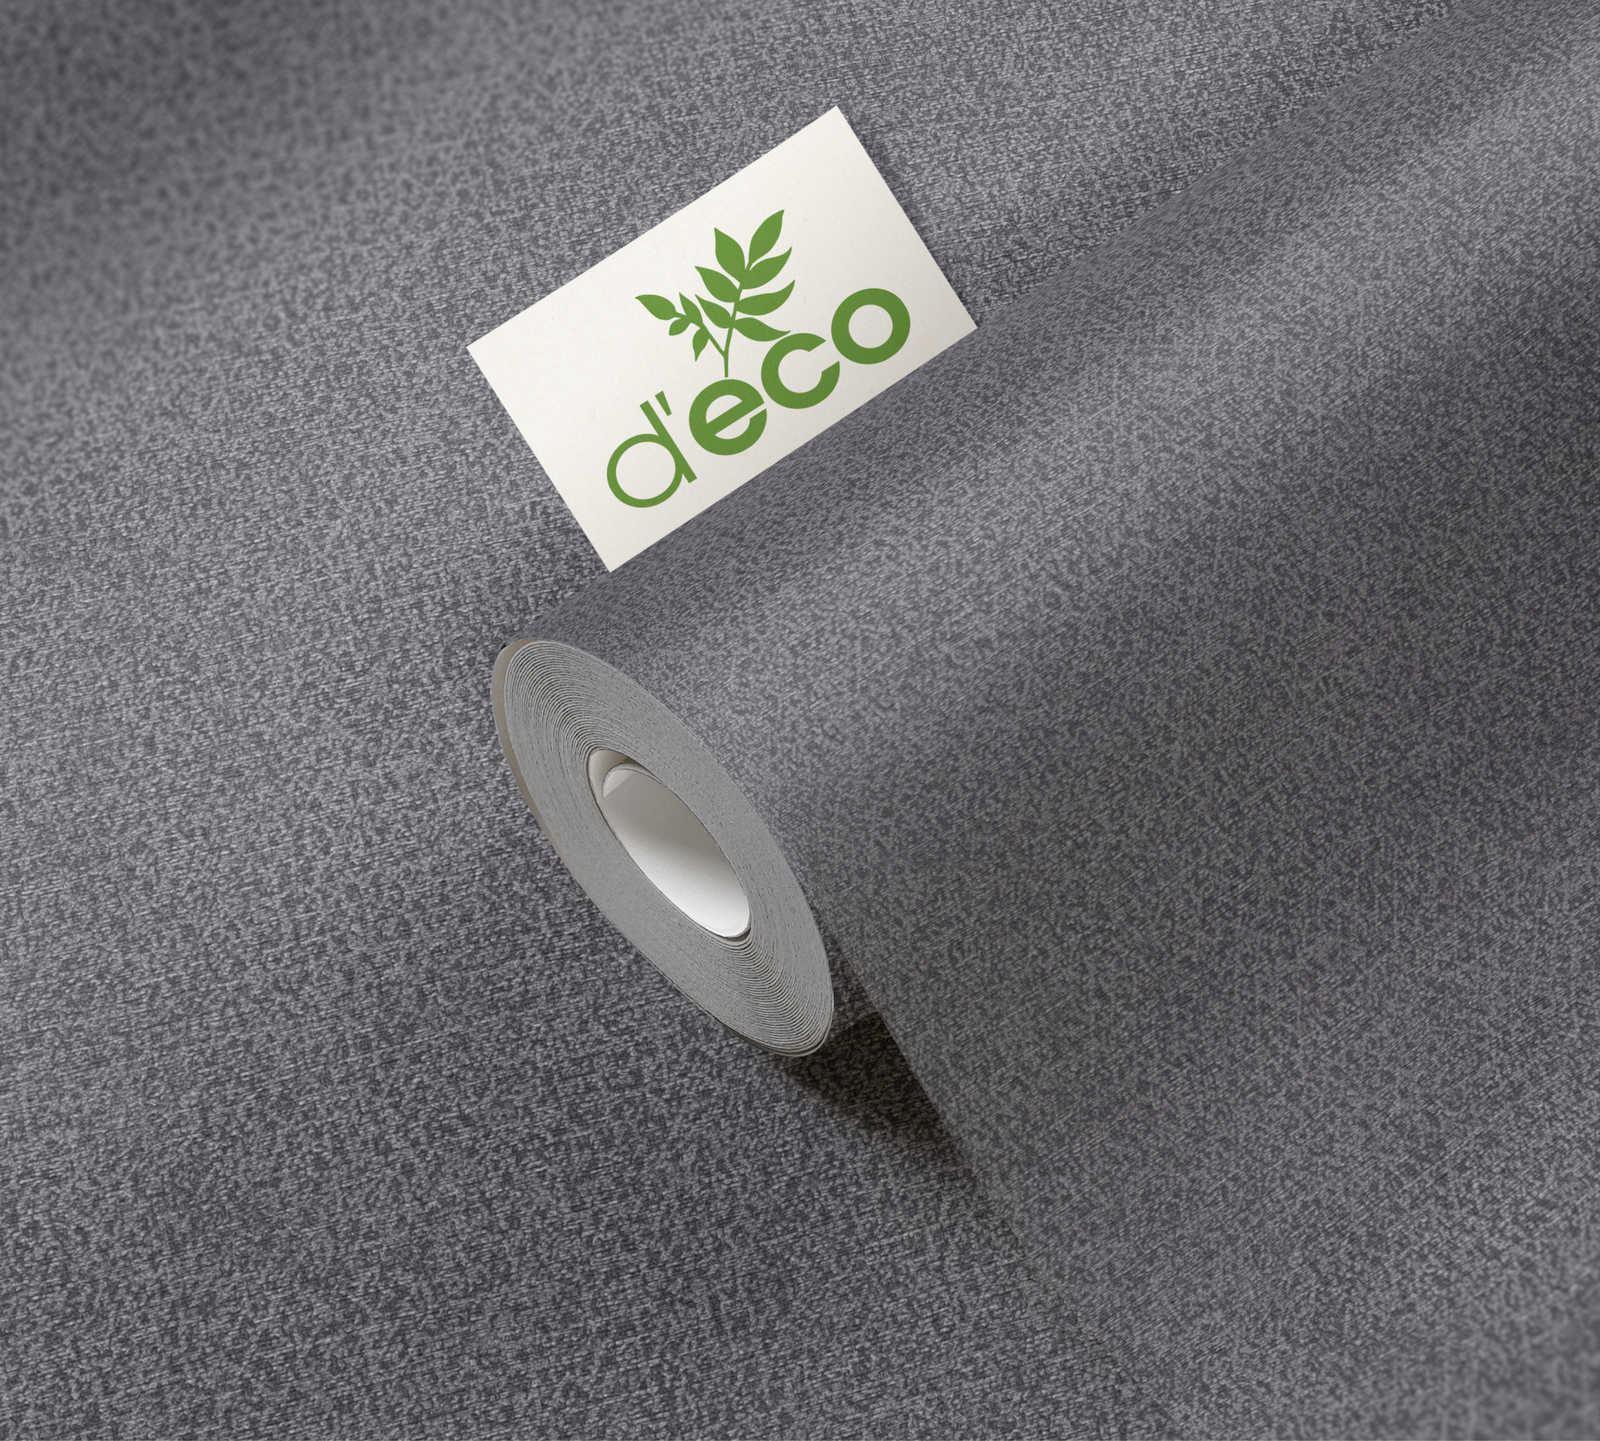             Carta da parati in tessuto non tessuto senza PVC con motivo lucido - nero, argento
        